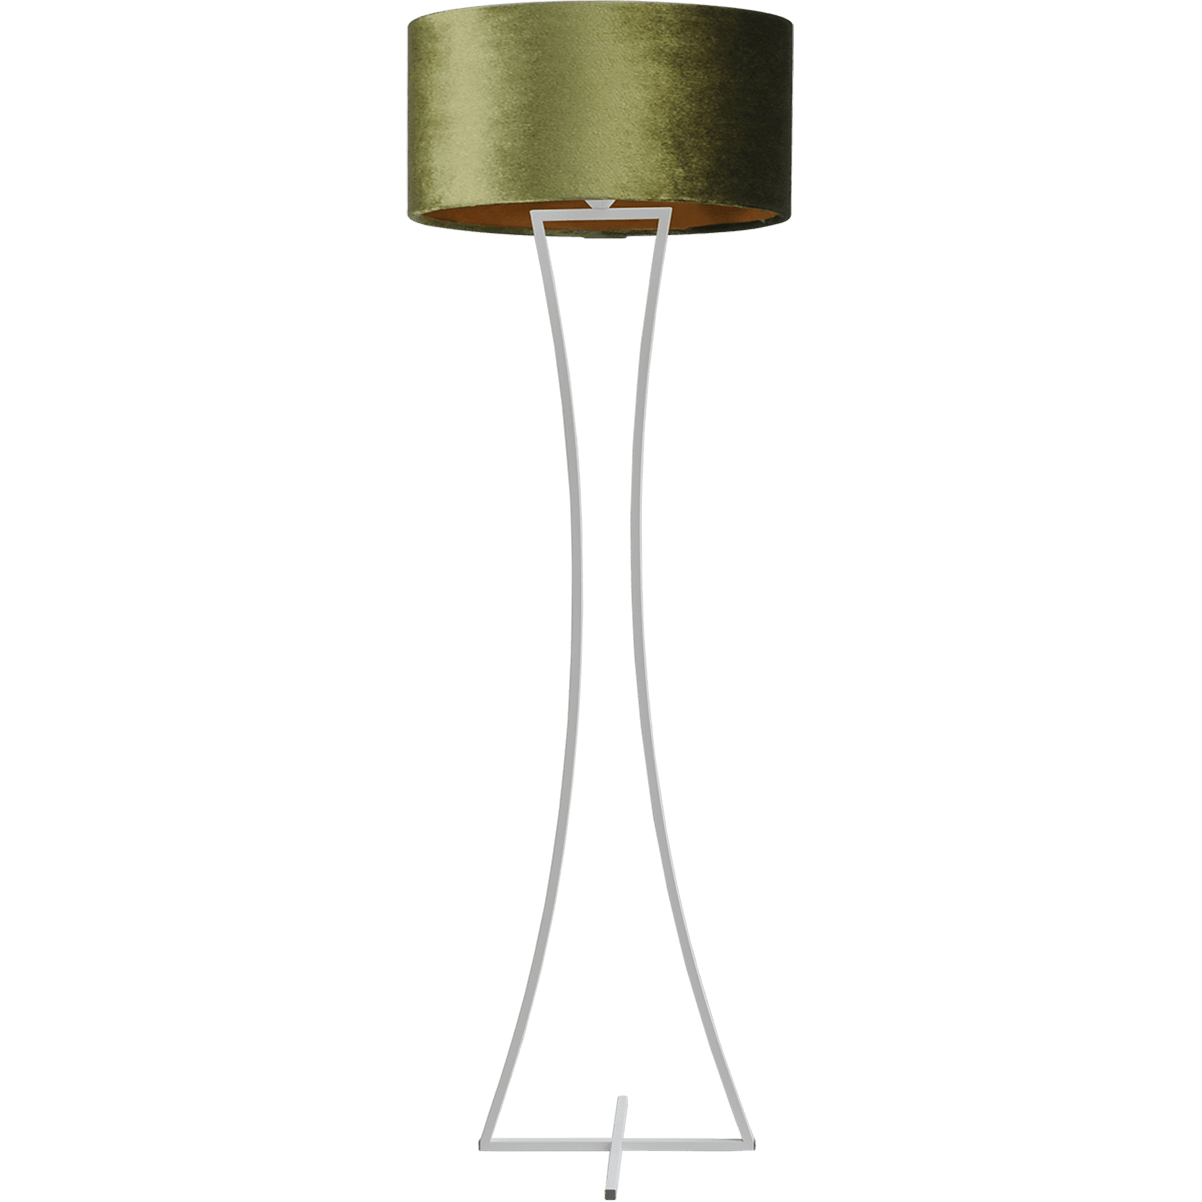 Vloerlamp Cross Woman wit structuur hoogte 158cm inclusief groene lampenkap Artik green 52/52/25 - MASTERLIGHT